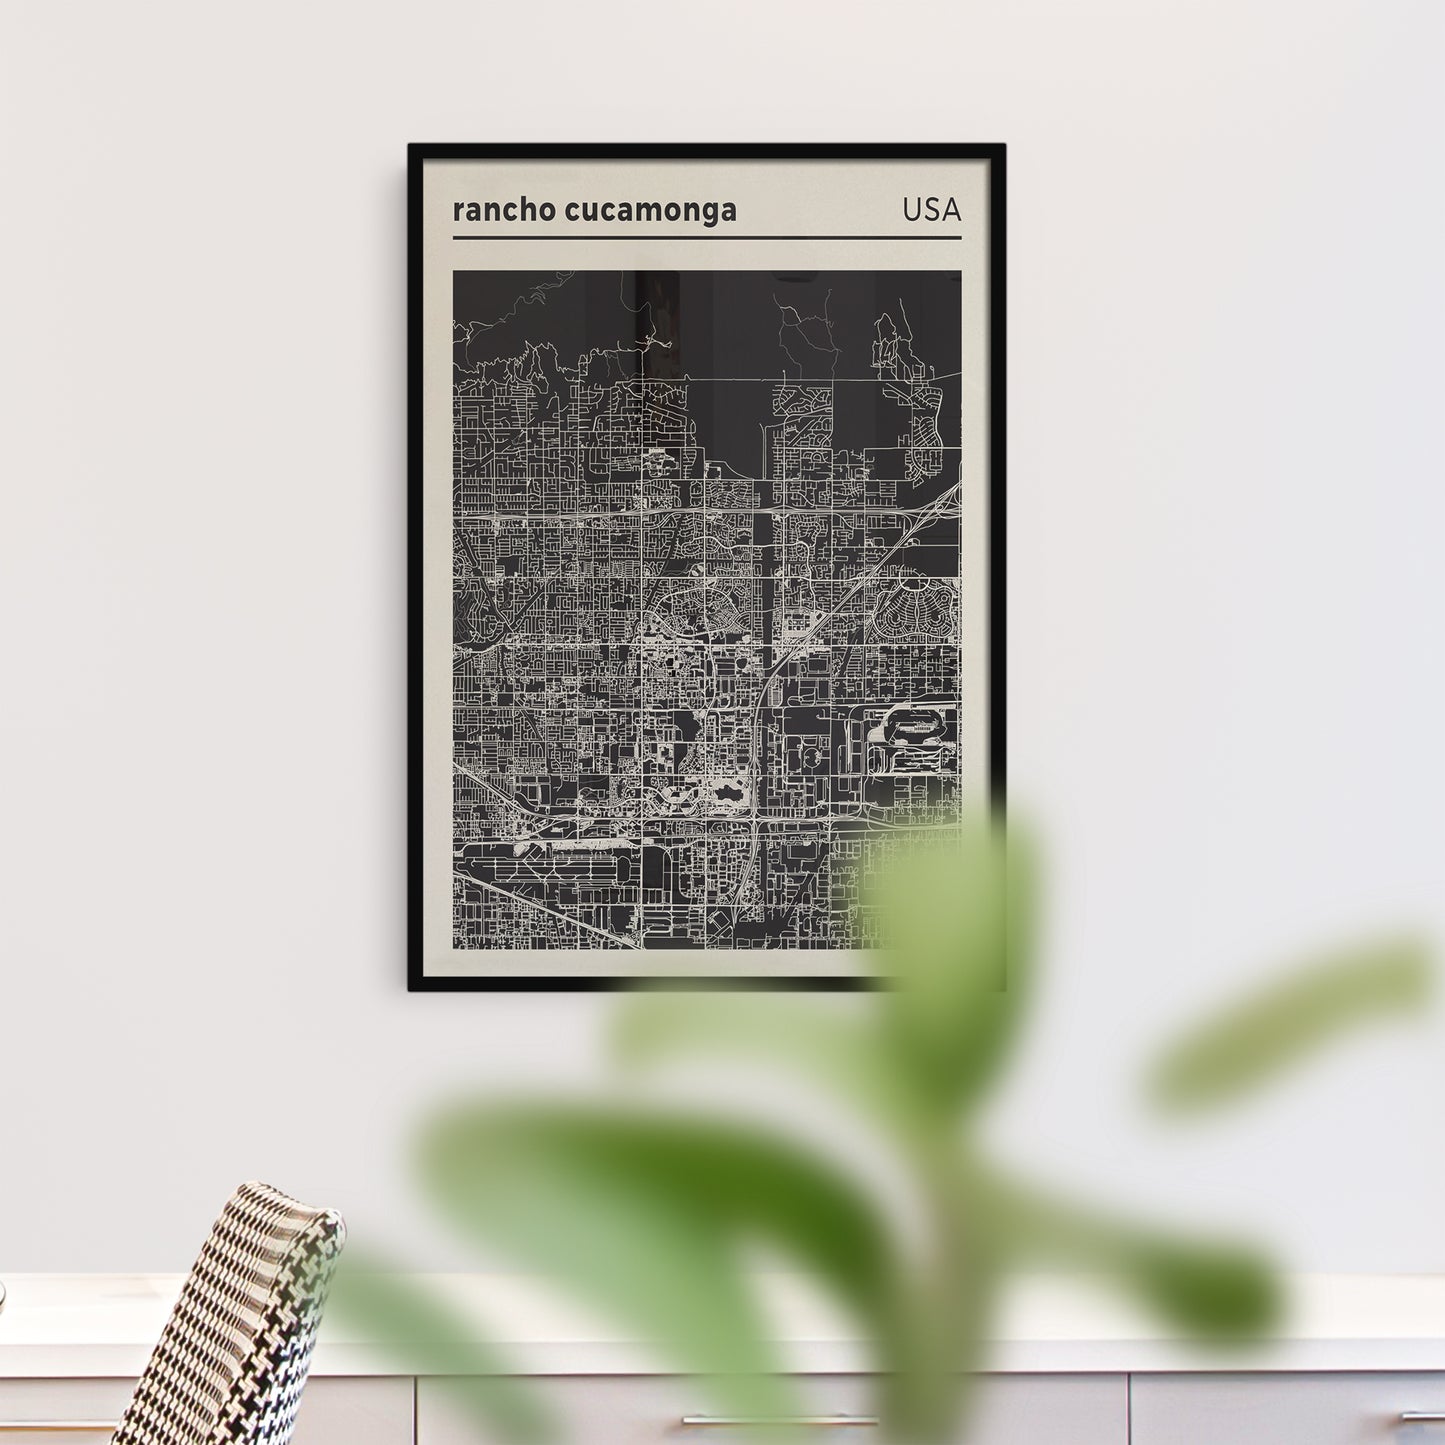 Rancho Cucamonga - USA, City Map Poster